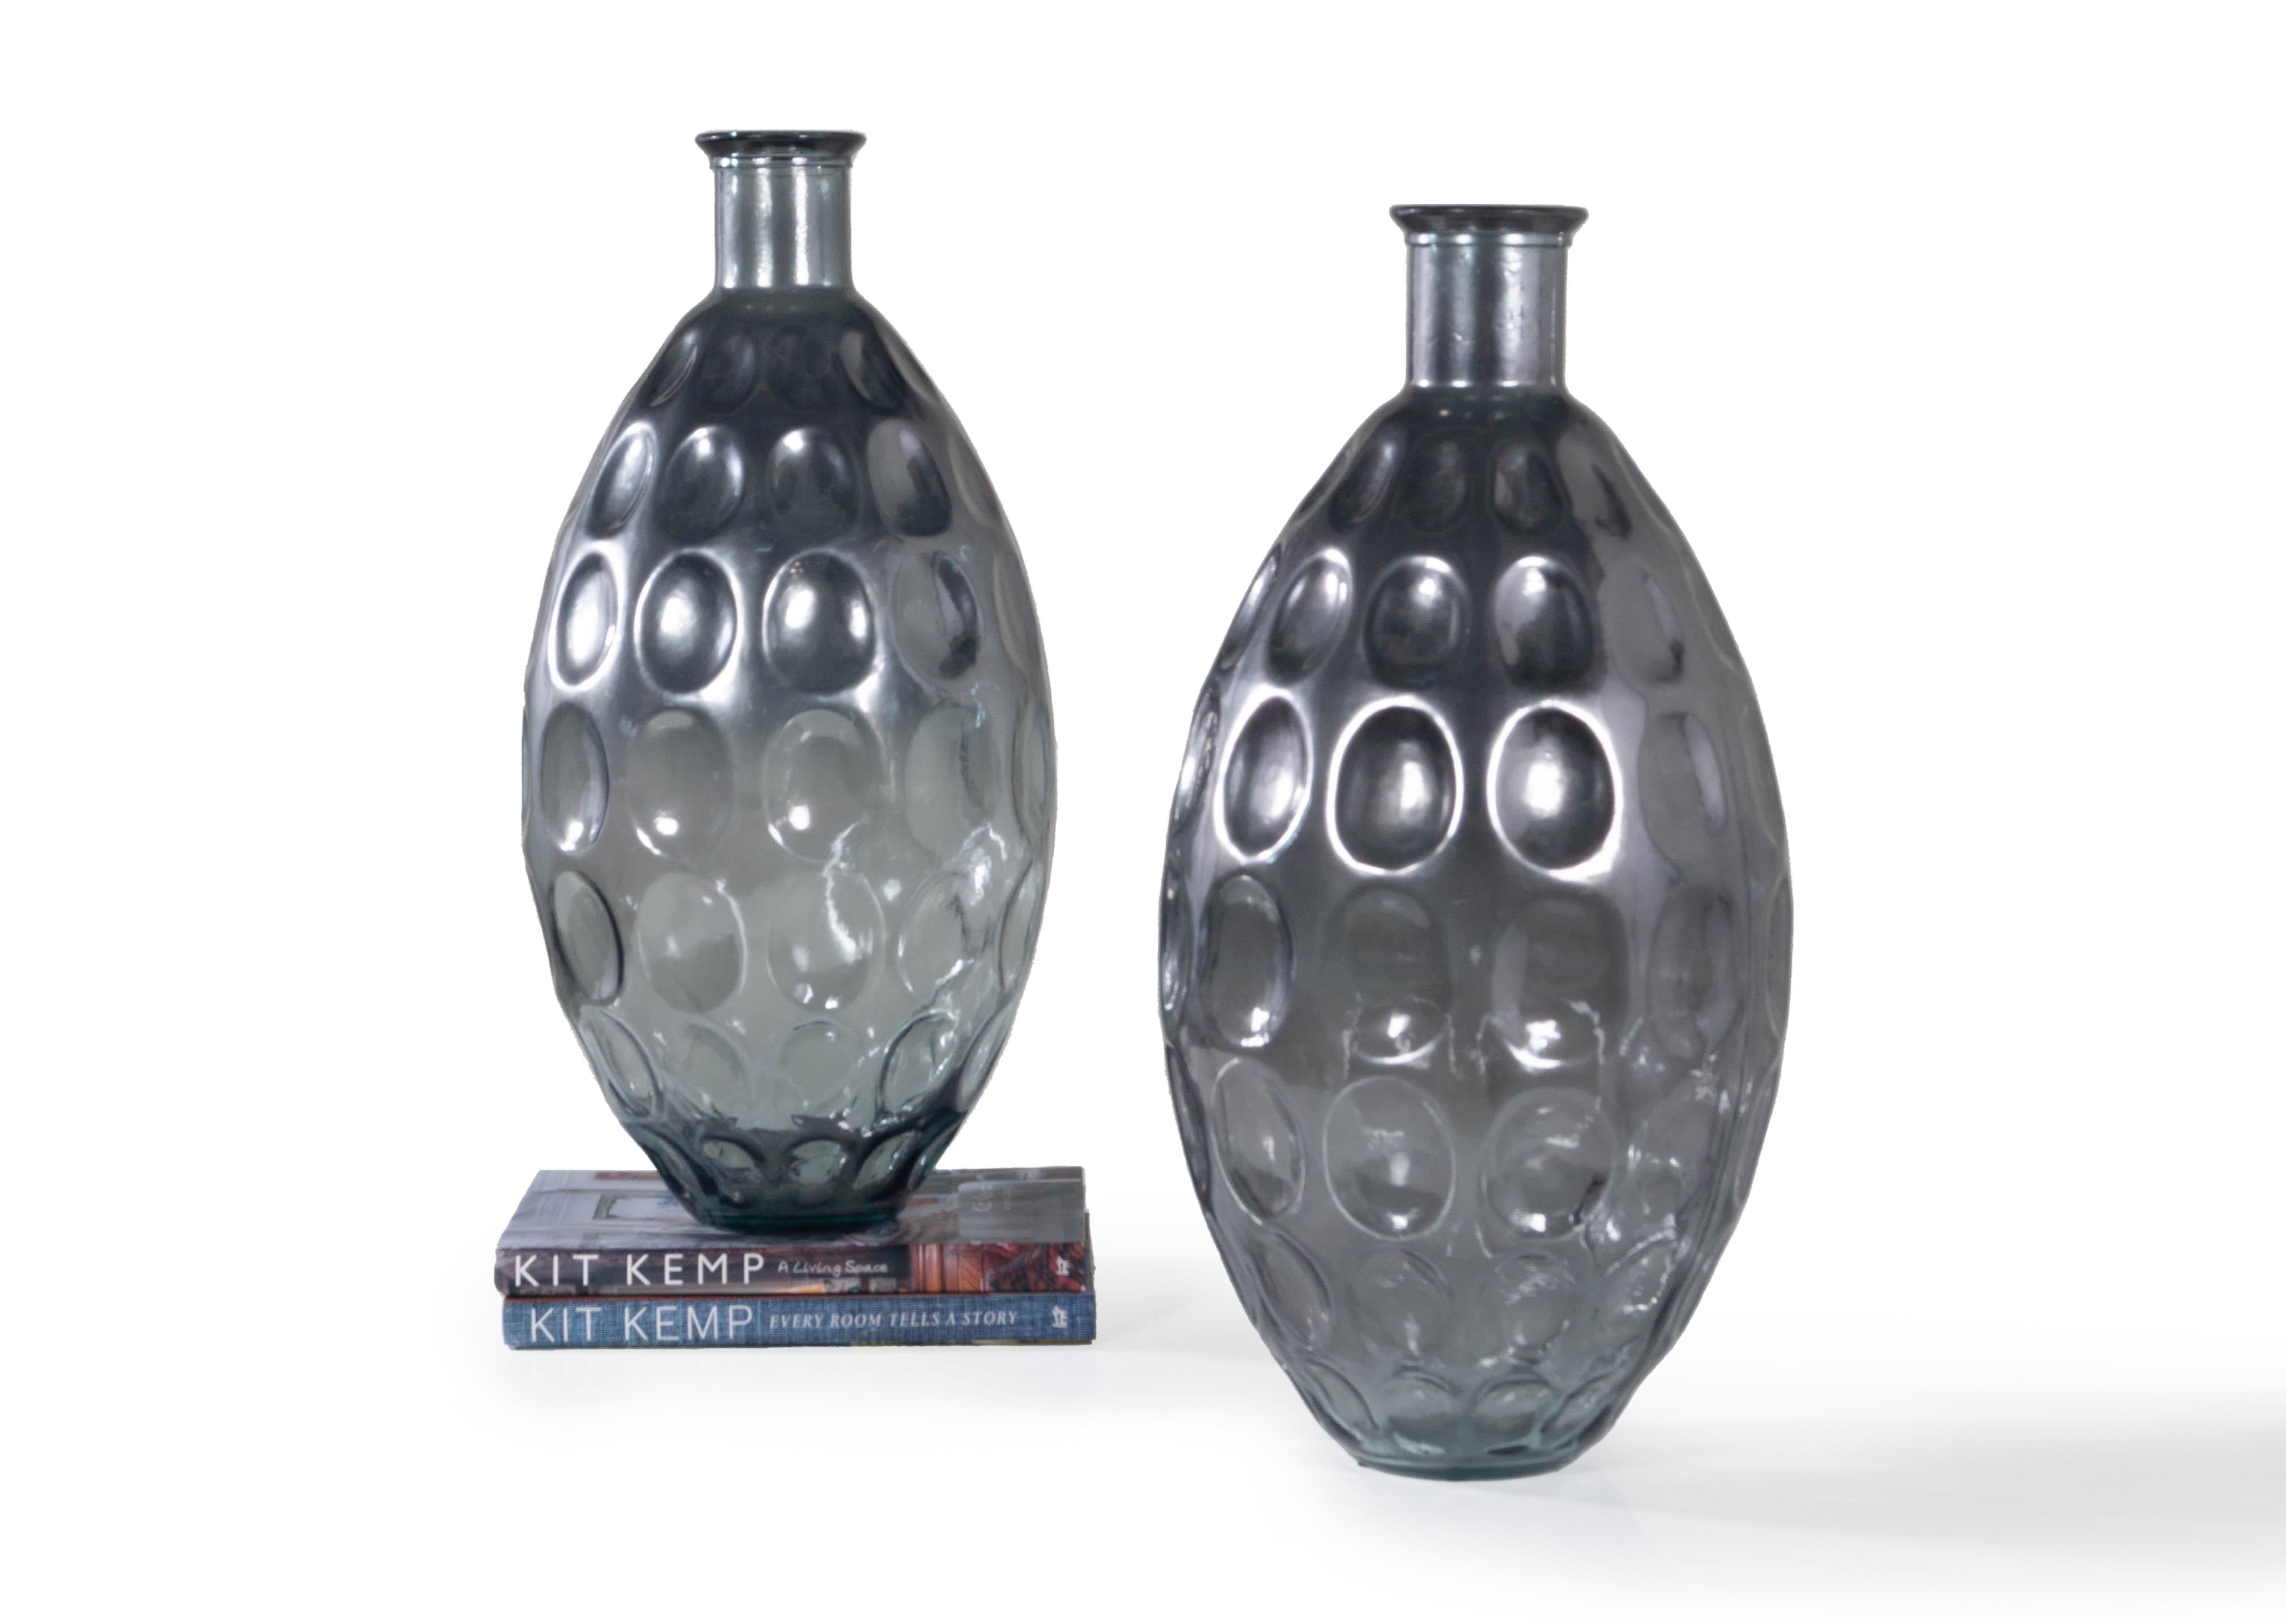 Ajoutez de l'éclat à tout espace avec cette paire de vases monumentaux en verre pressé. Ces vases présentent une finition légèrement métallique, une teinte bleu gris pierre et une impression d'ovale inversé. La bouche étroite de cette paire de vases